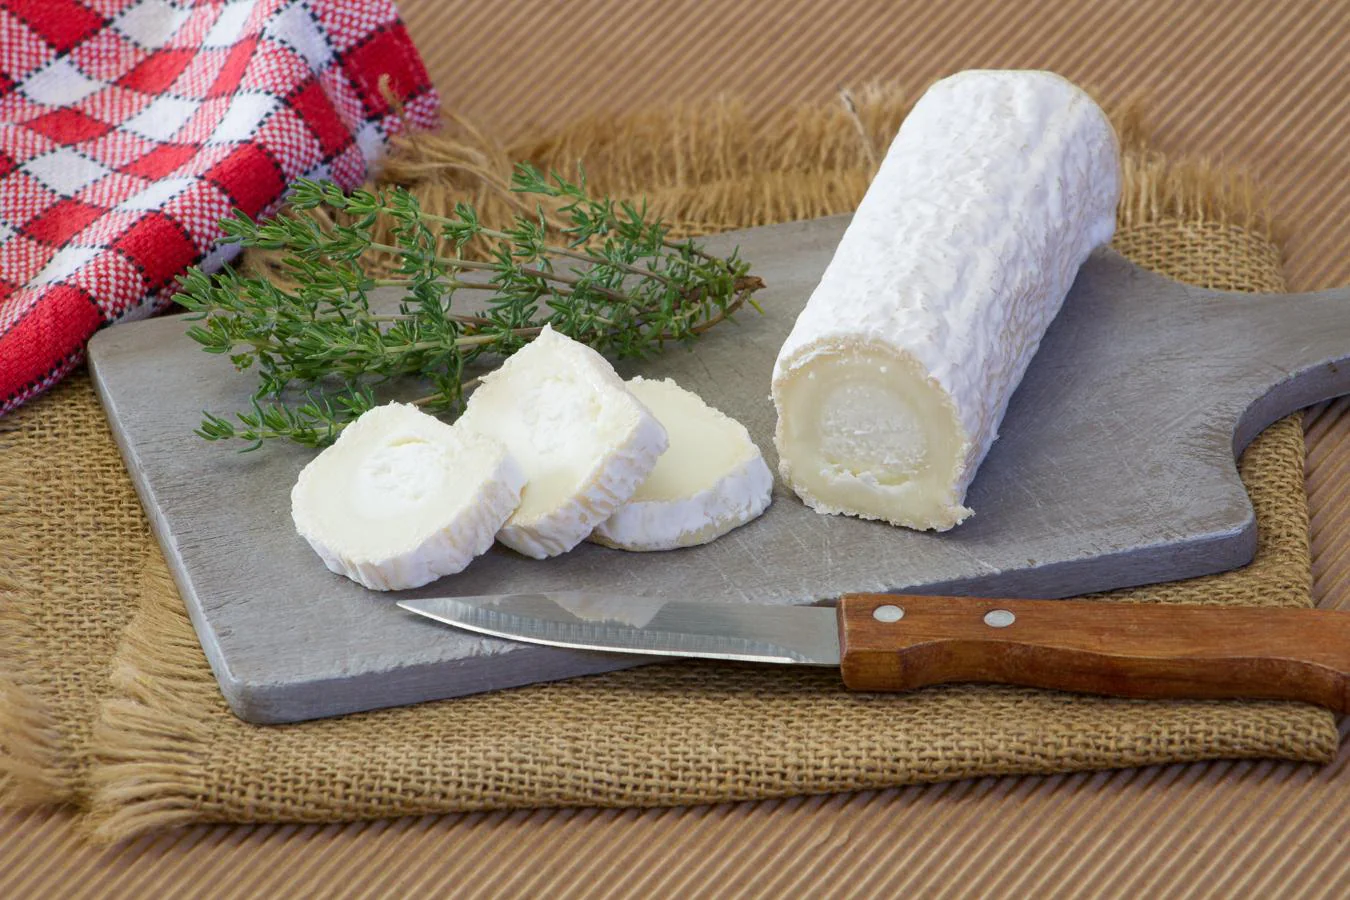 Queso de cabra. El queso de cabra contiene 53 ug de ácido fólico, según datos de la Bedca, pero también se puede destacar su alta cantidad de vitamina A (437 ug), calcio (190 mg) y potasio (114 mg).